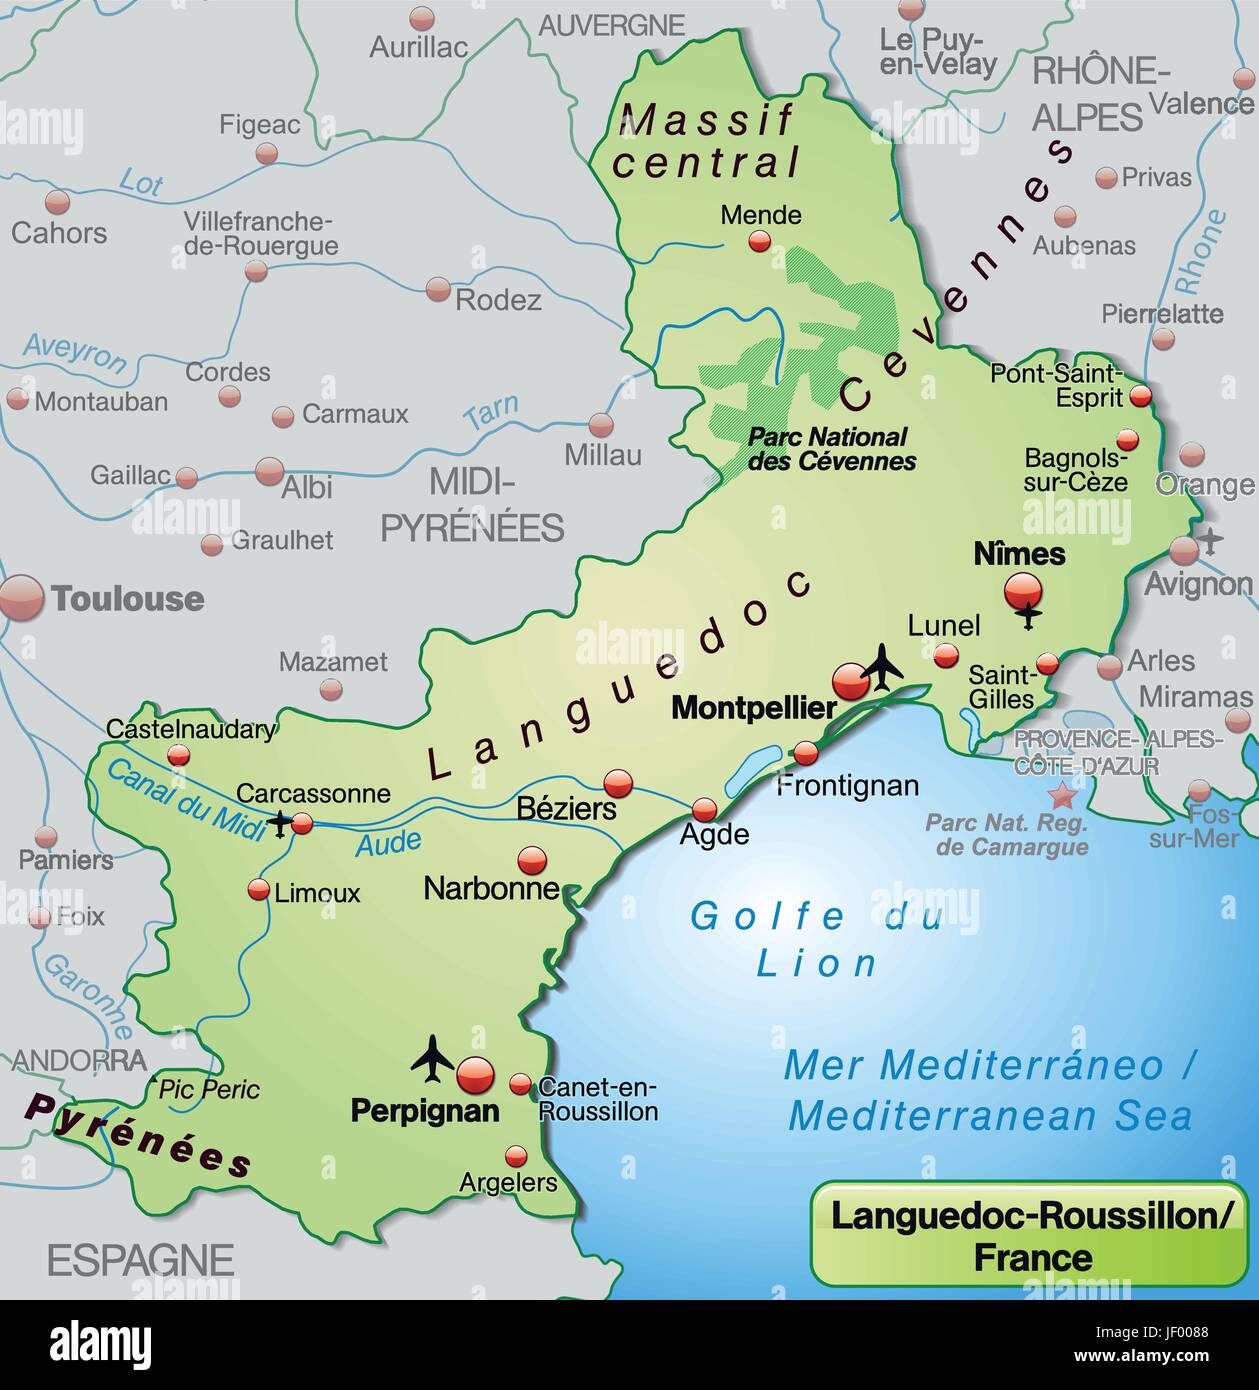 Karte von Languedoc-Roussillon als eine Übersichtskarte in Pastellgrün Stock Vektor